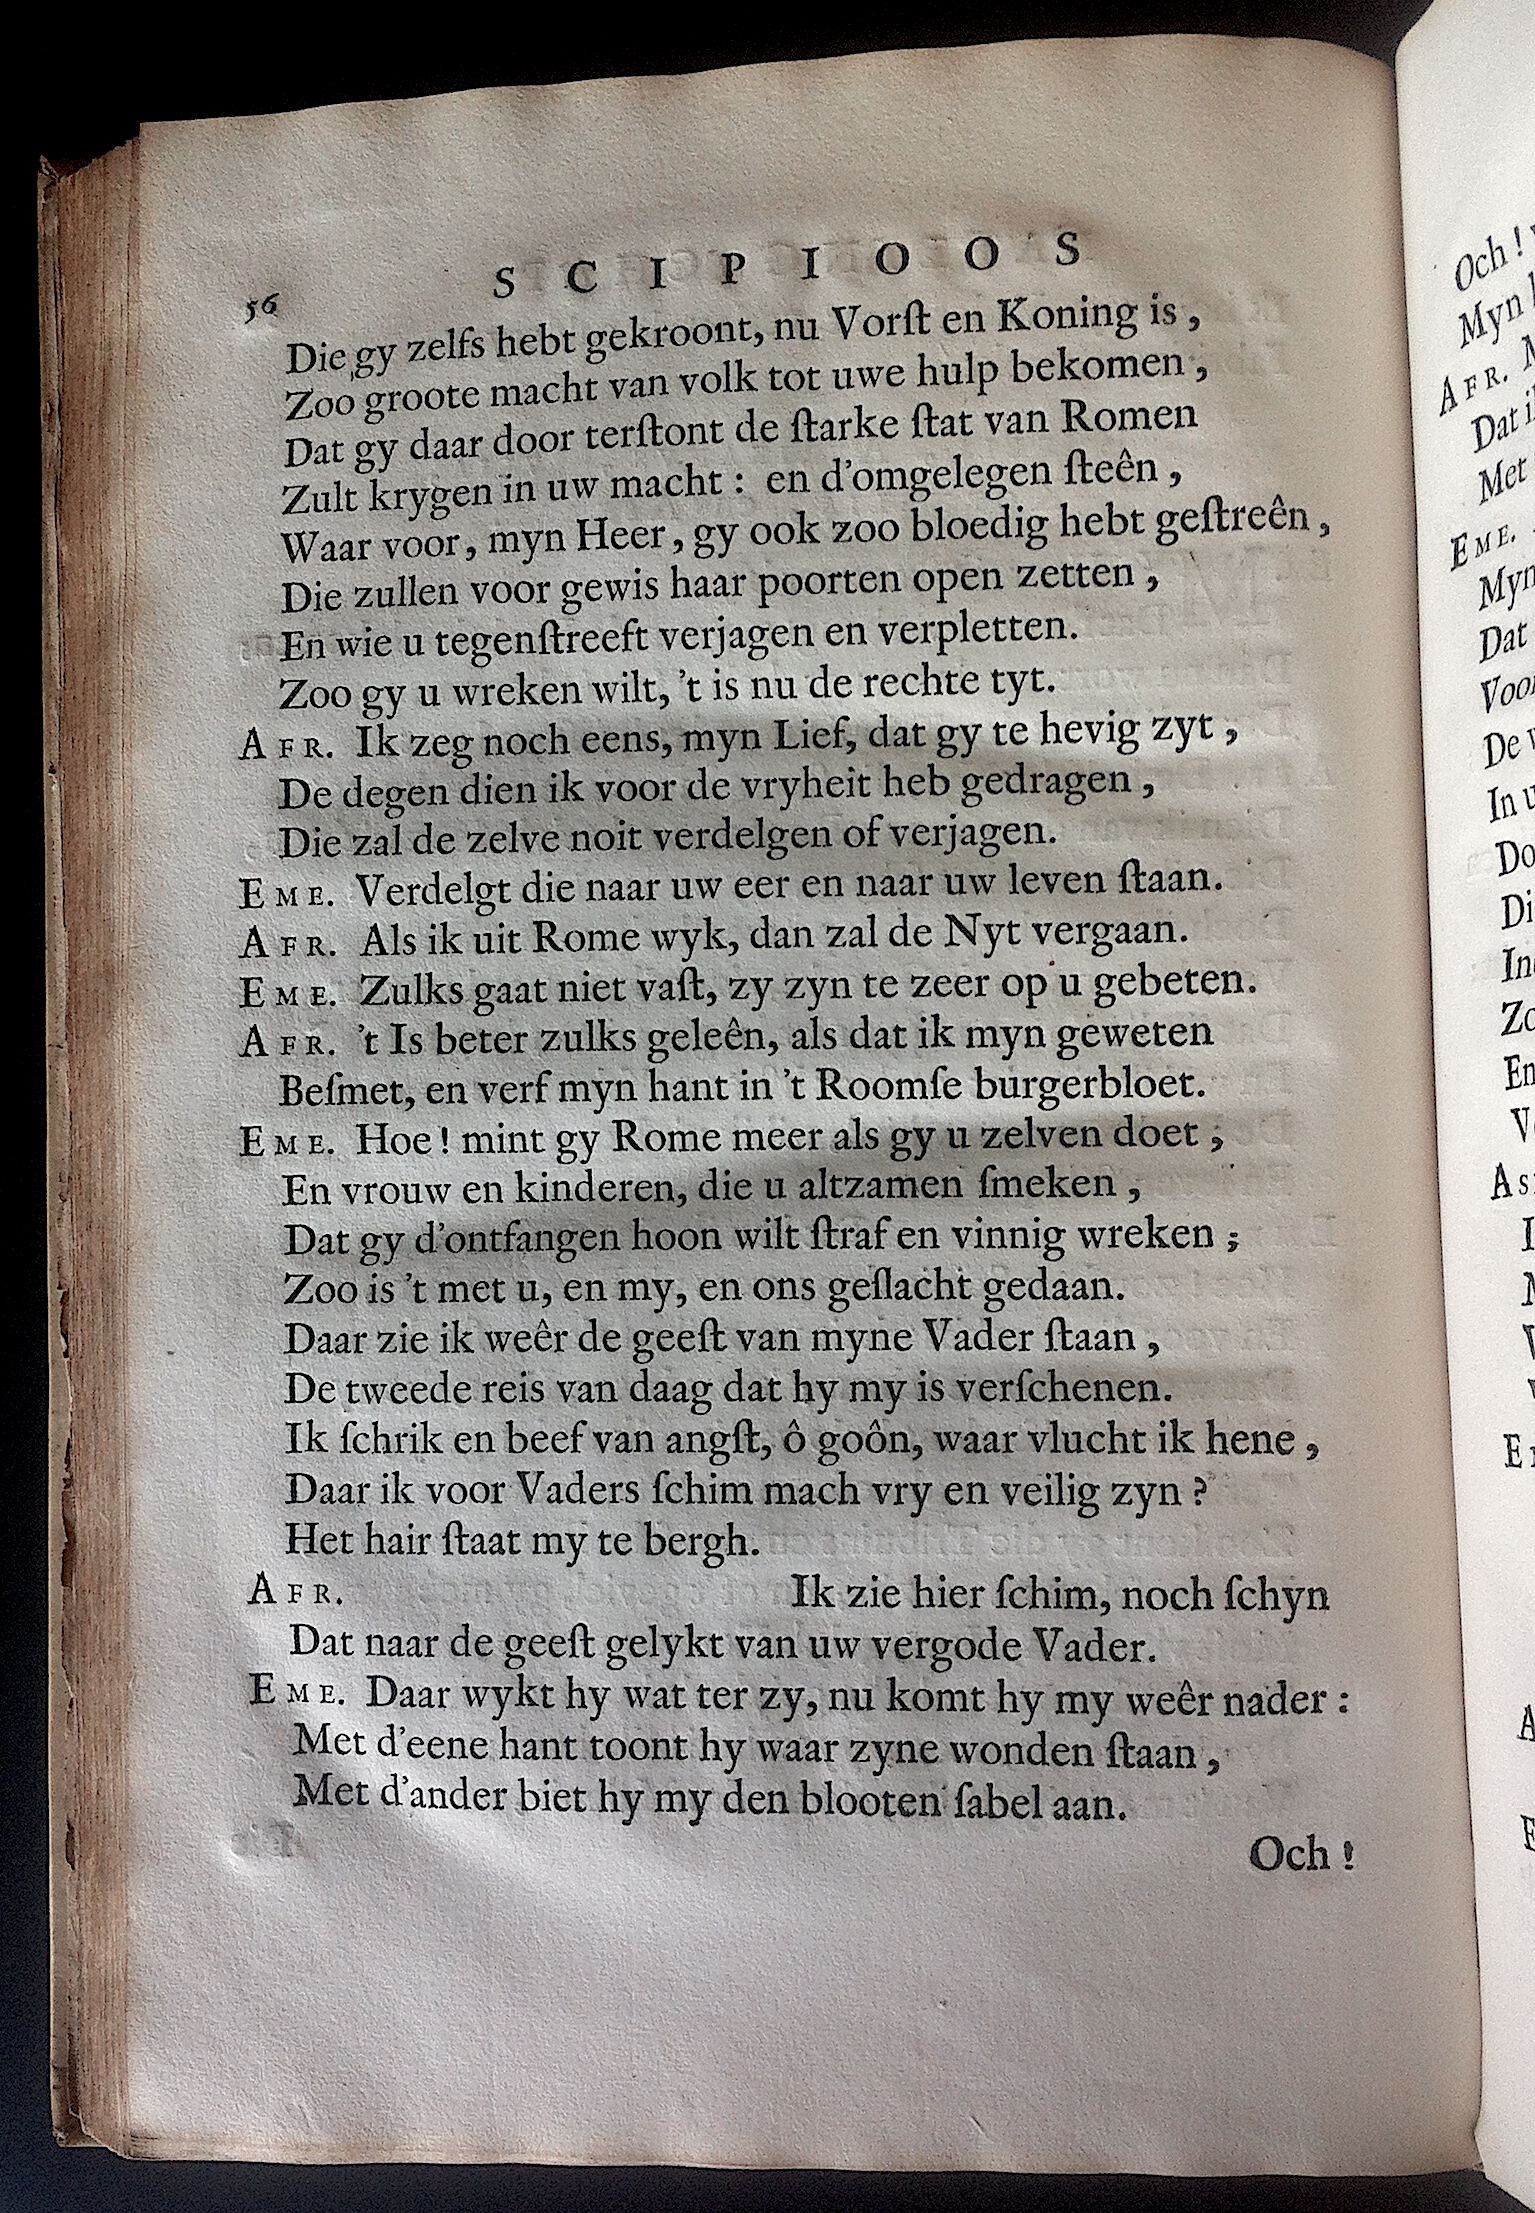 BoccardScipioFolio1658p56